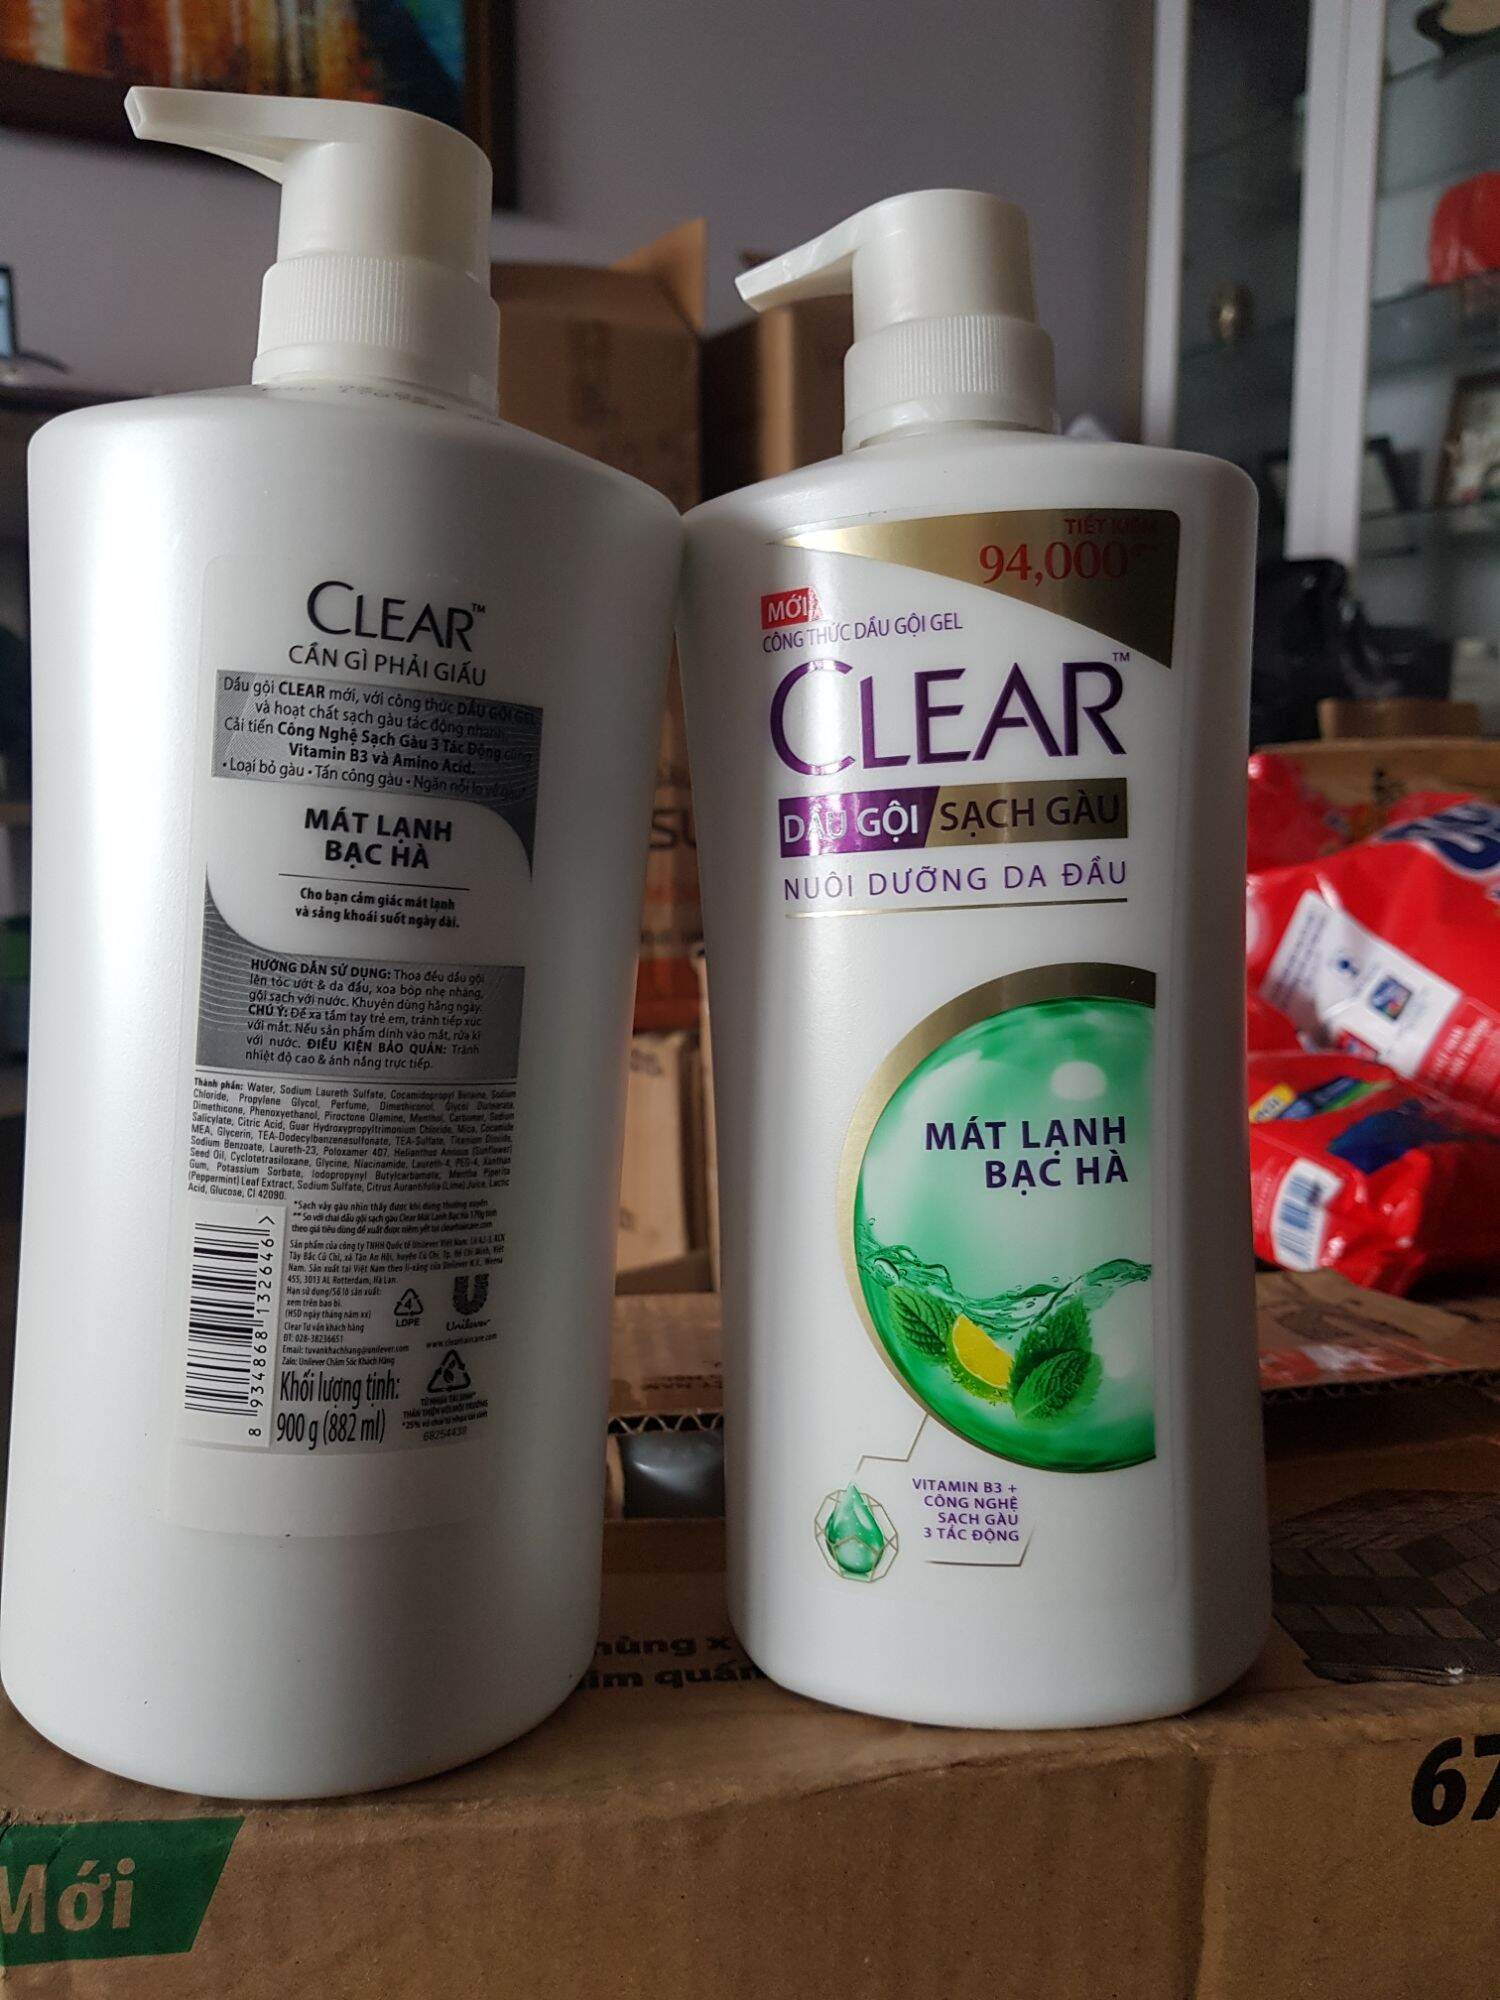 Dầu gội Clear bạc hà 900mlcủa Unilever giúp sạch gàu thumbnail